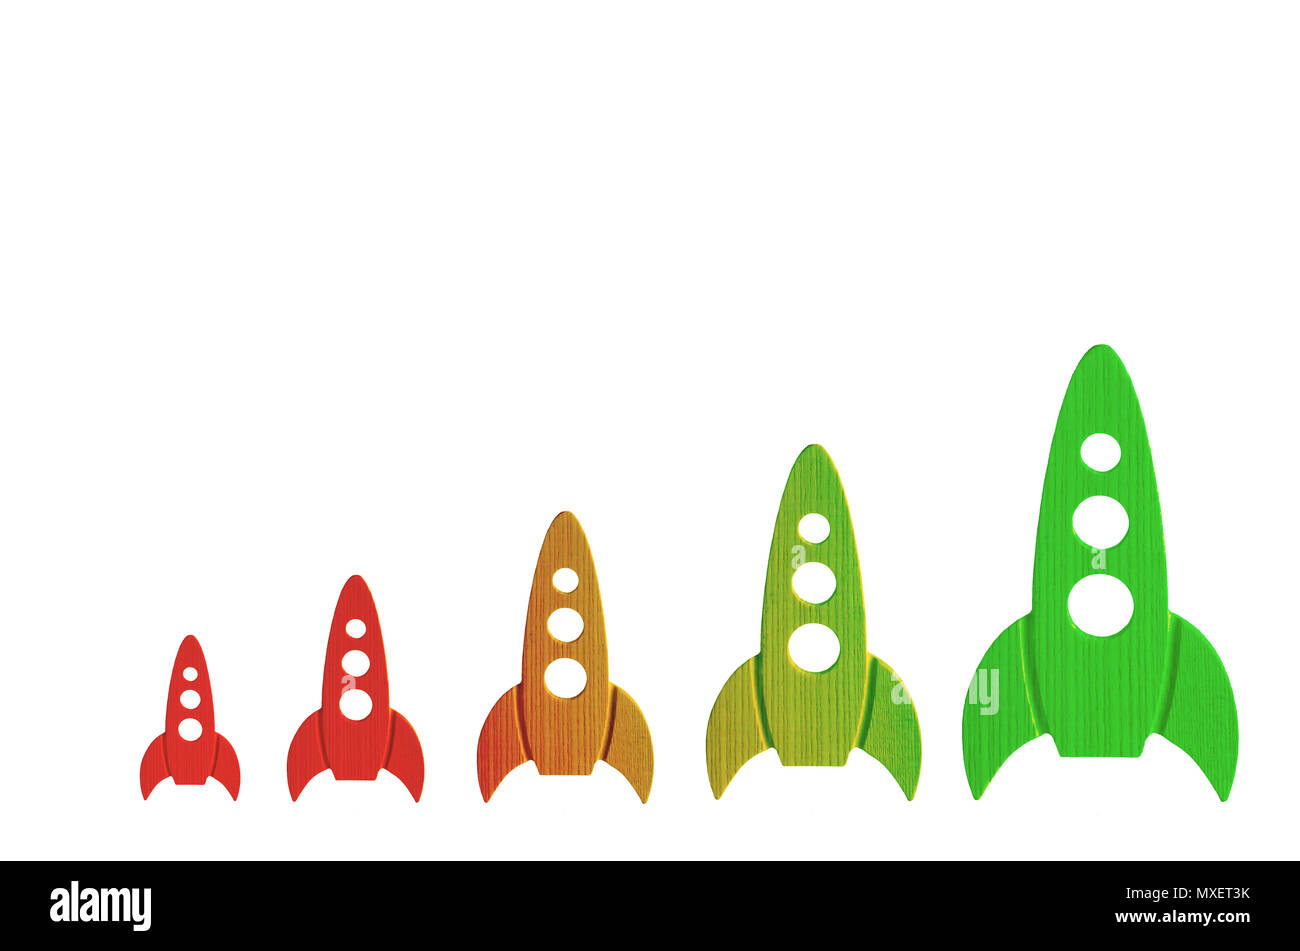 Raketen, die Farbe von Rot zu Grün, sind in der Reihenfolge des zunehmenden auf einem weißen Hintergrund. Das Konzept von Raum und Technologie, Reisen zu den Sternen und anderen p Stockfoto